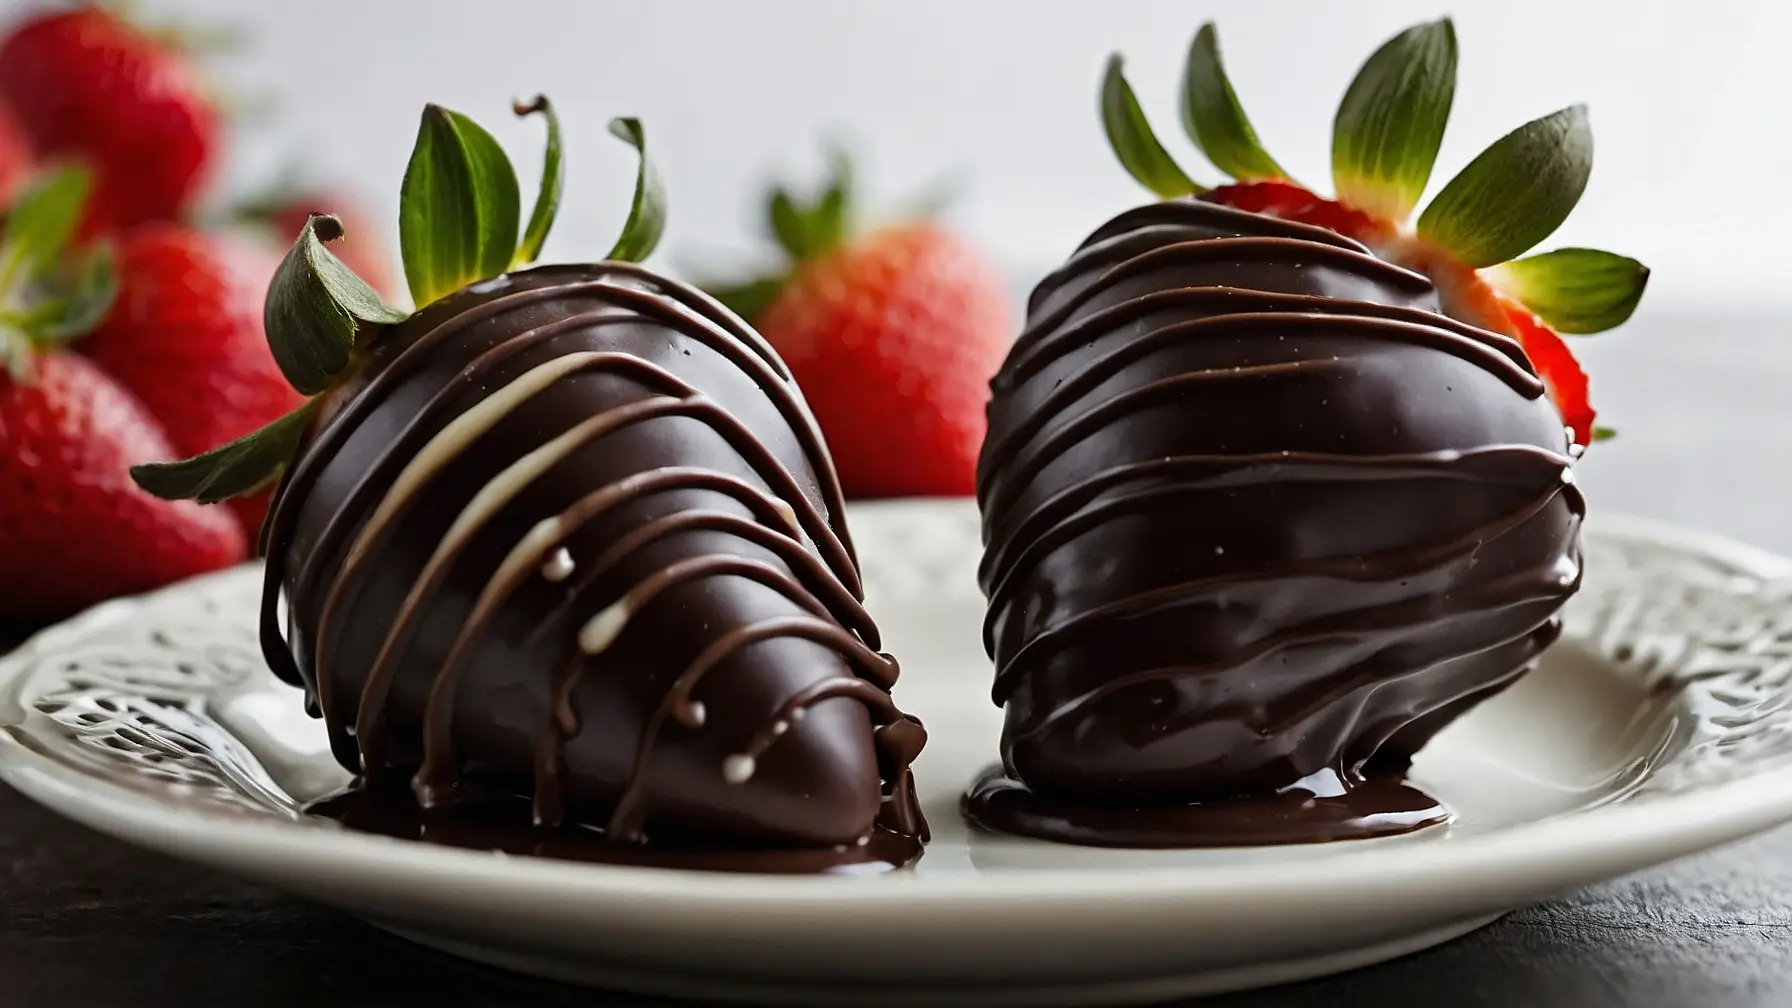 Dark chocolate covered strawberries